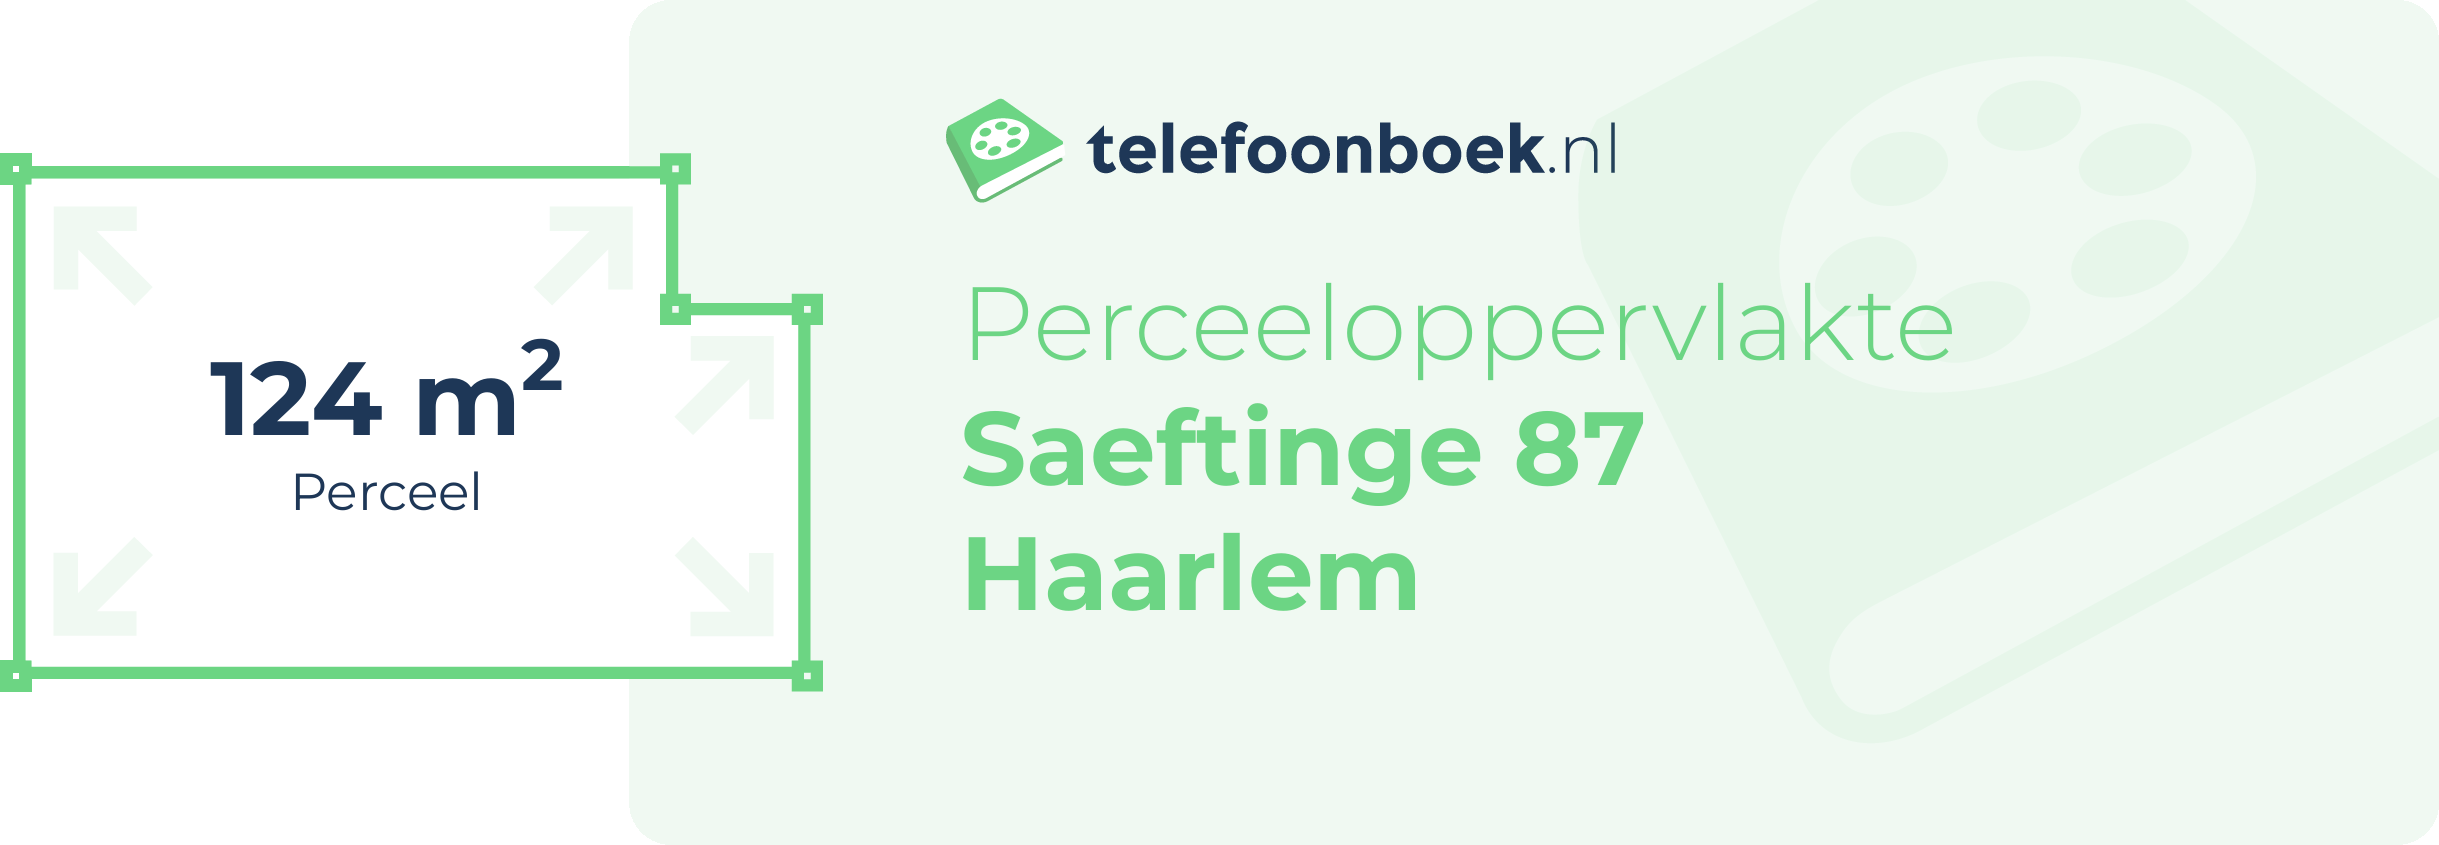 Perceeloppervlakte Saeftinge 87 Haarlem